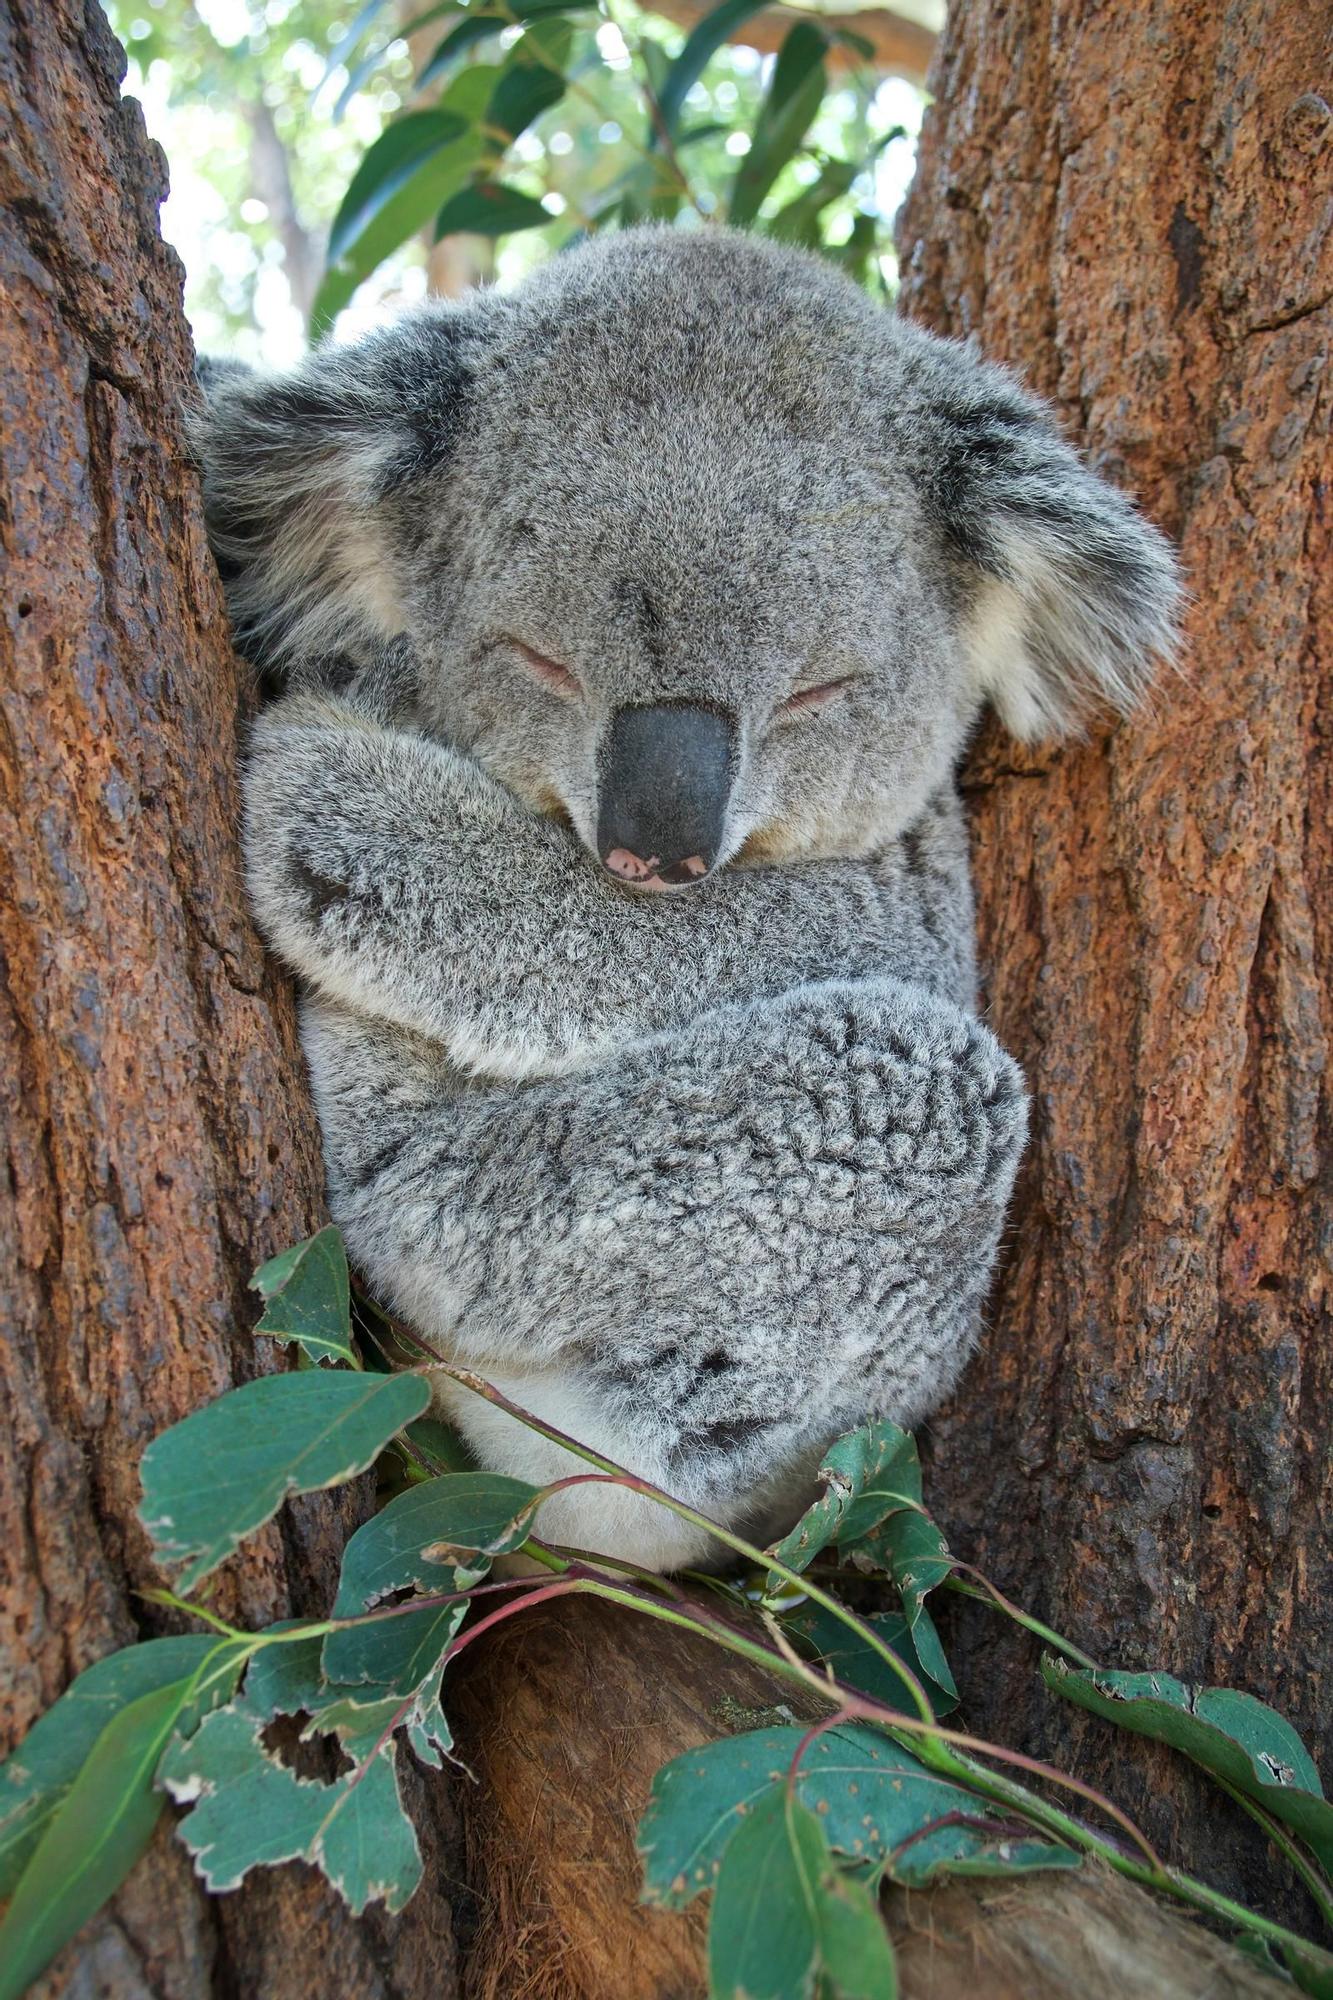 Australia es tiene flora y fauna peligrosa (aunque los koalas no lo son).